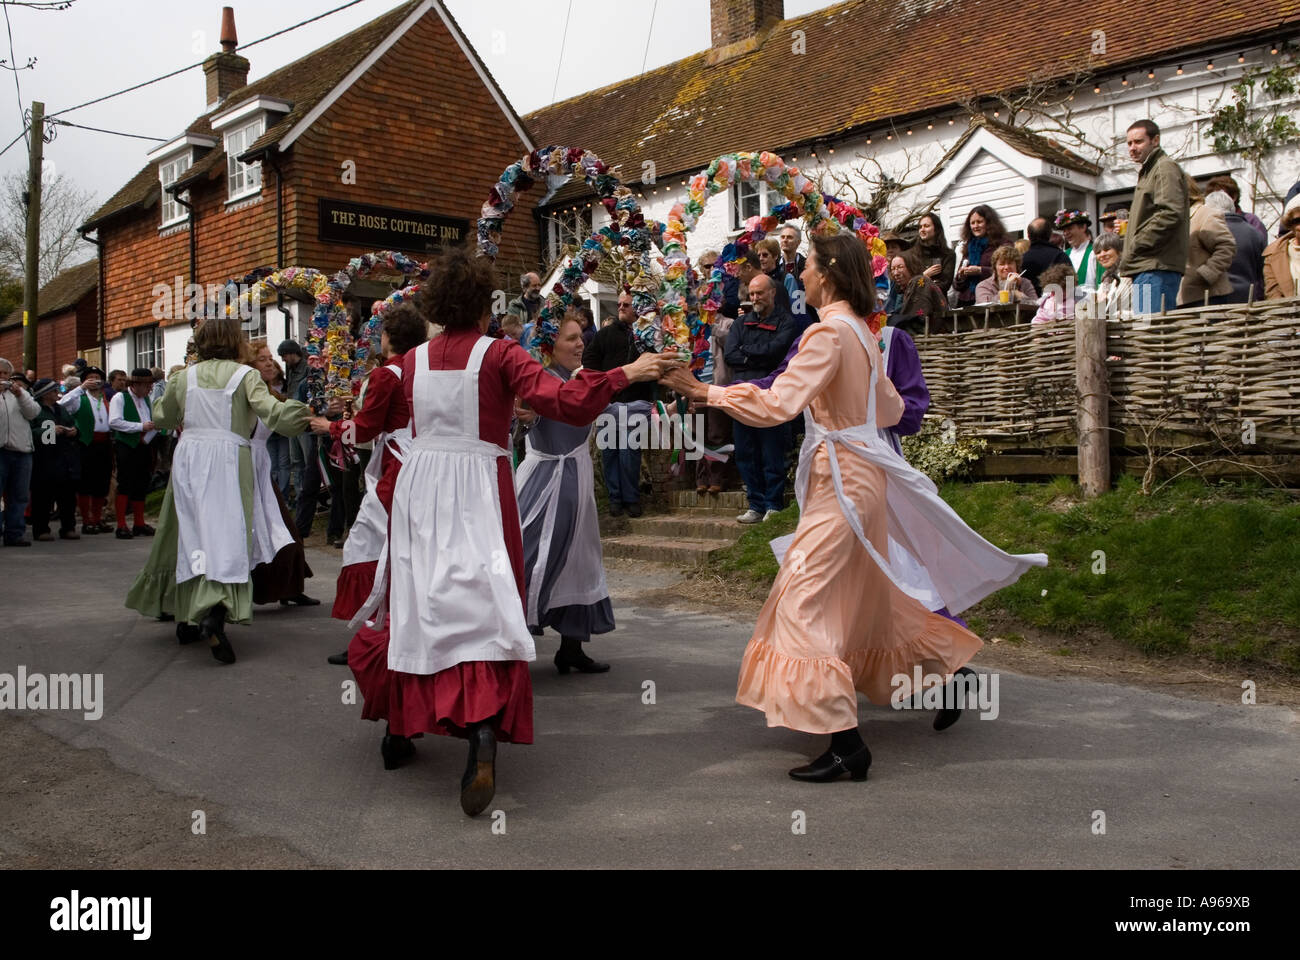 Les noeuds de mai, chers danseurs Morris dance team. Le Vendredi saint, le Rose Cottage Inn, Alciston Sussex England. Banque D'Images